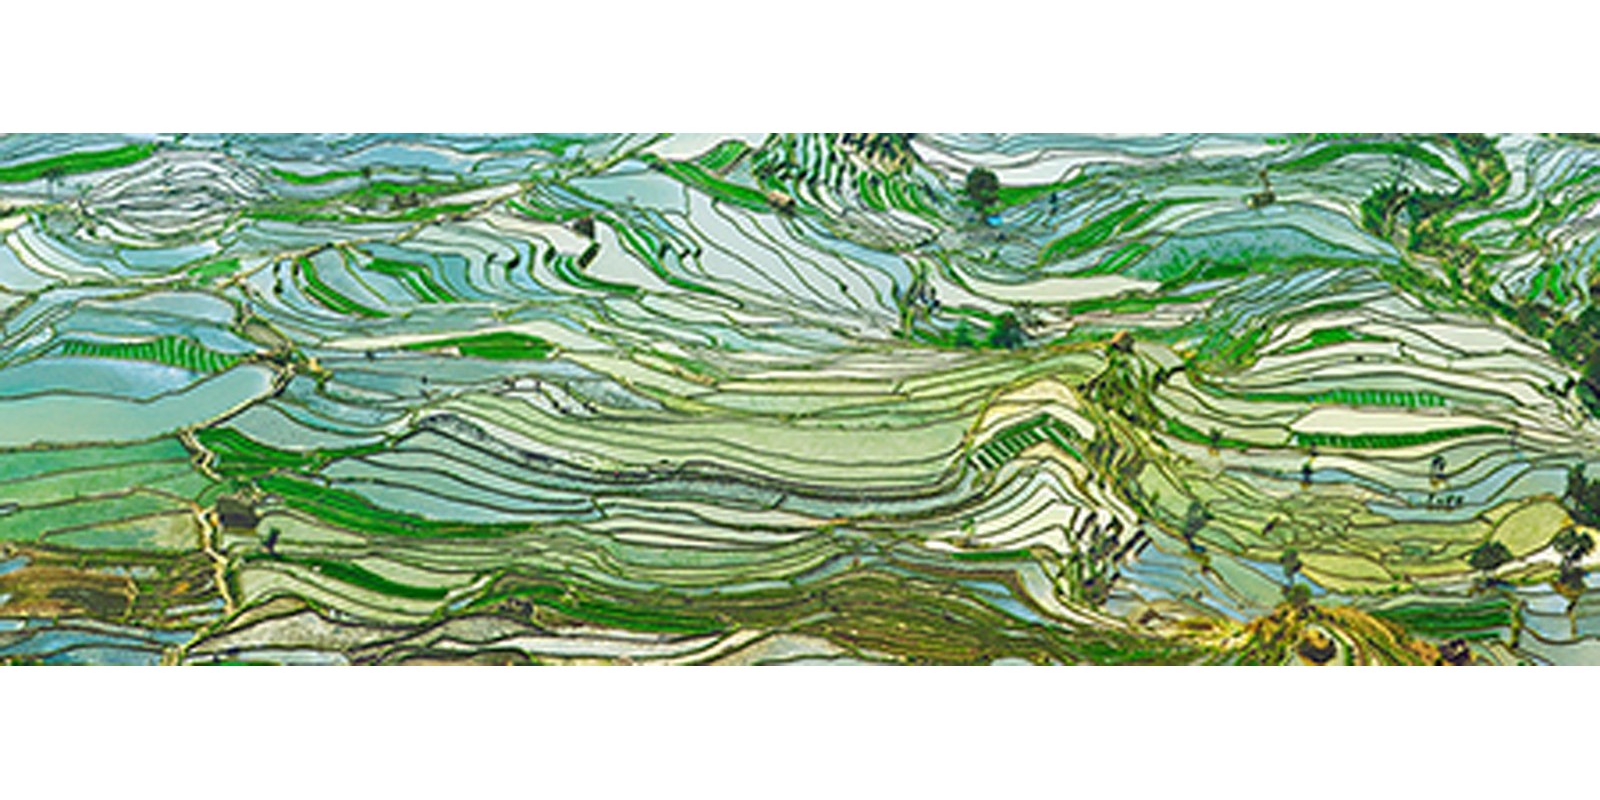 Frank Krahmer - Peru Rice Terraces, Yunnan, China